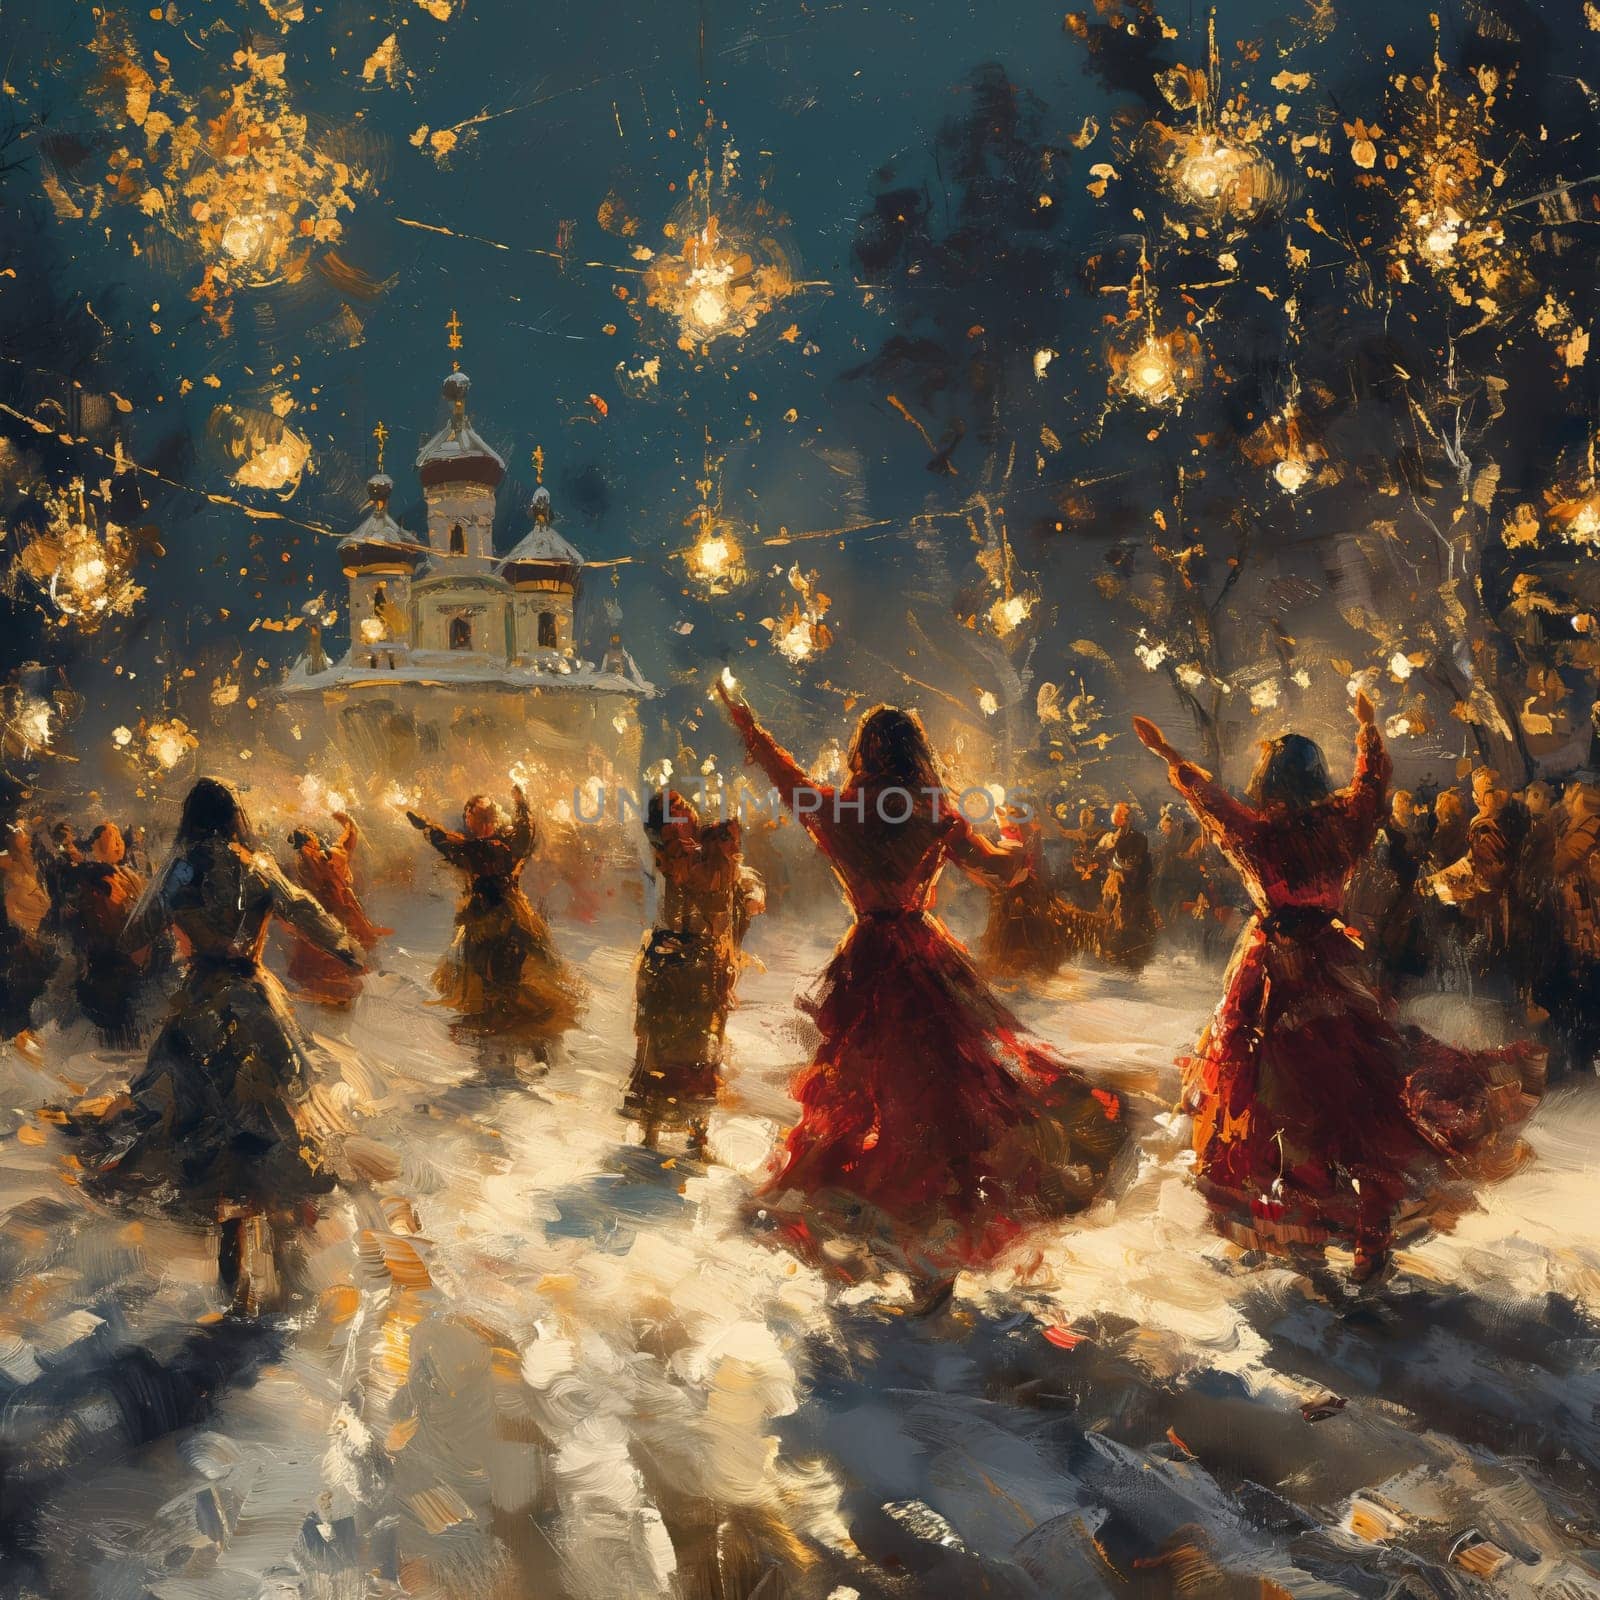 Folk Slavic dances and festivities in winter. by Fischeron